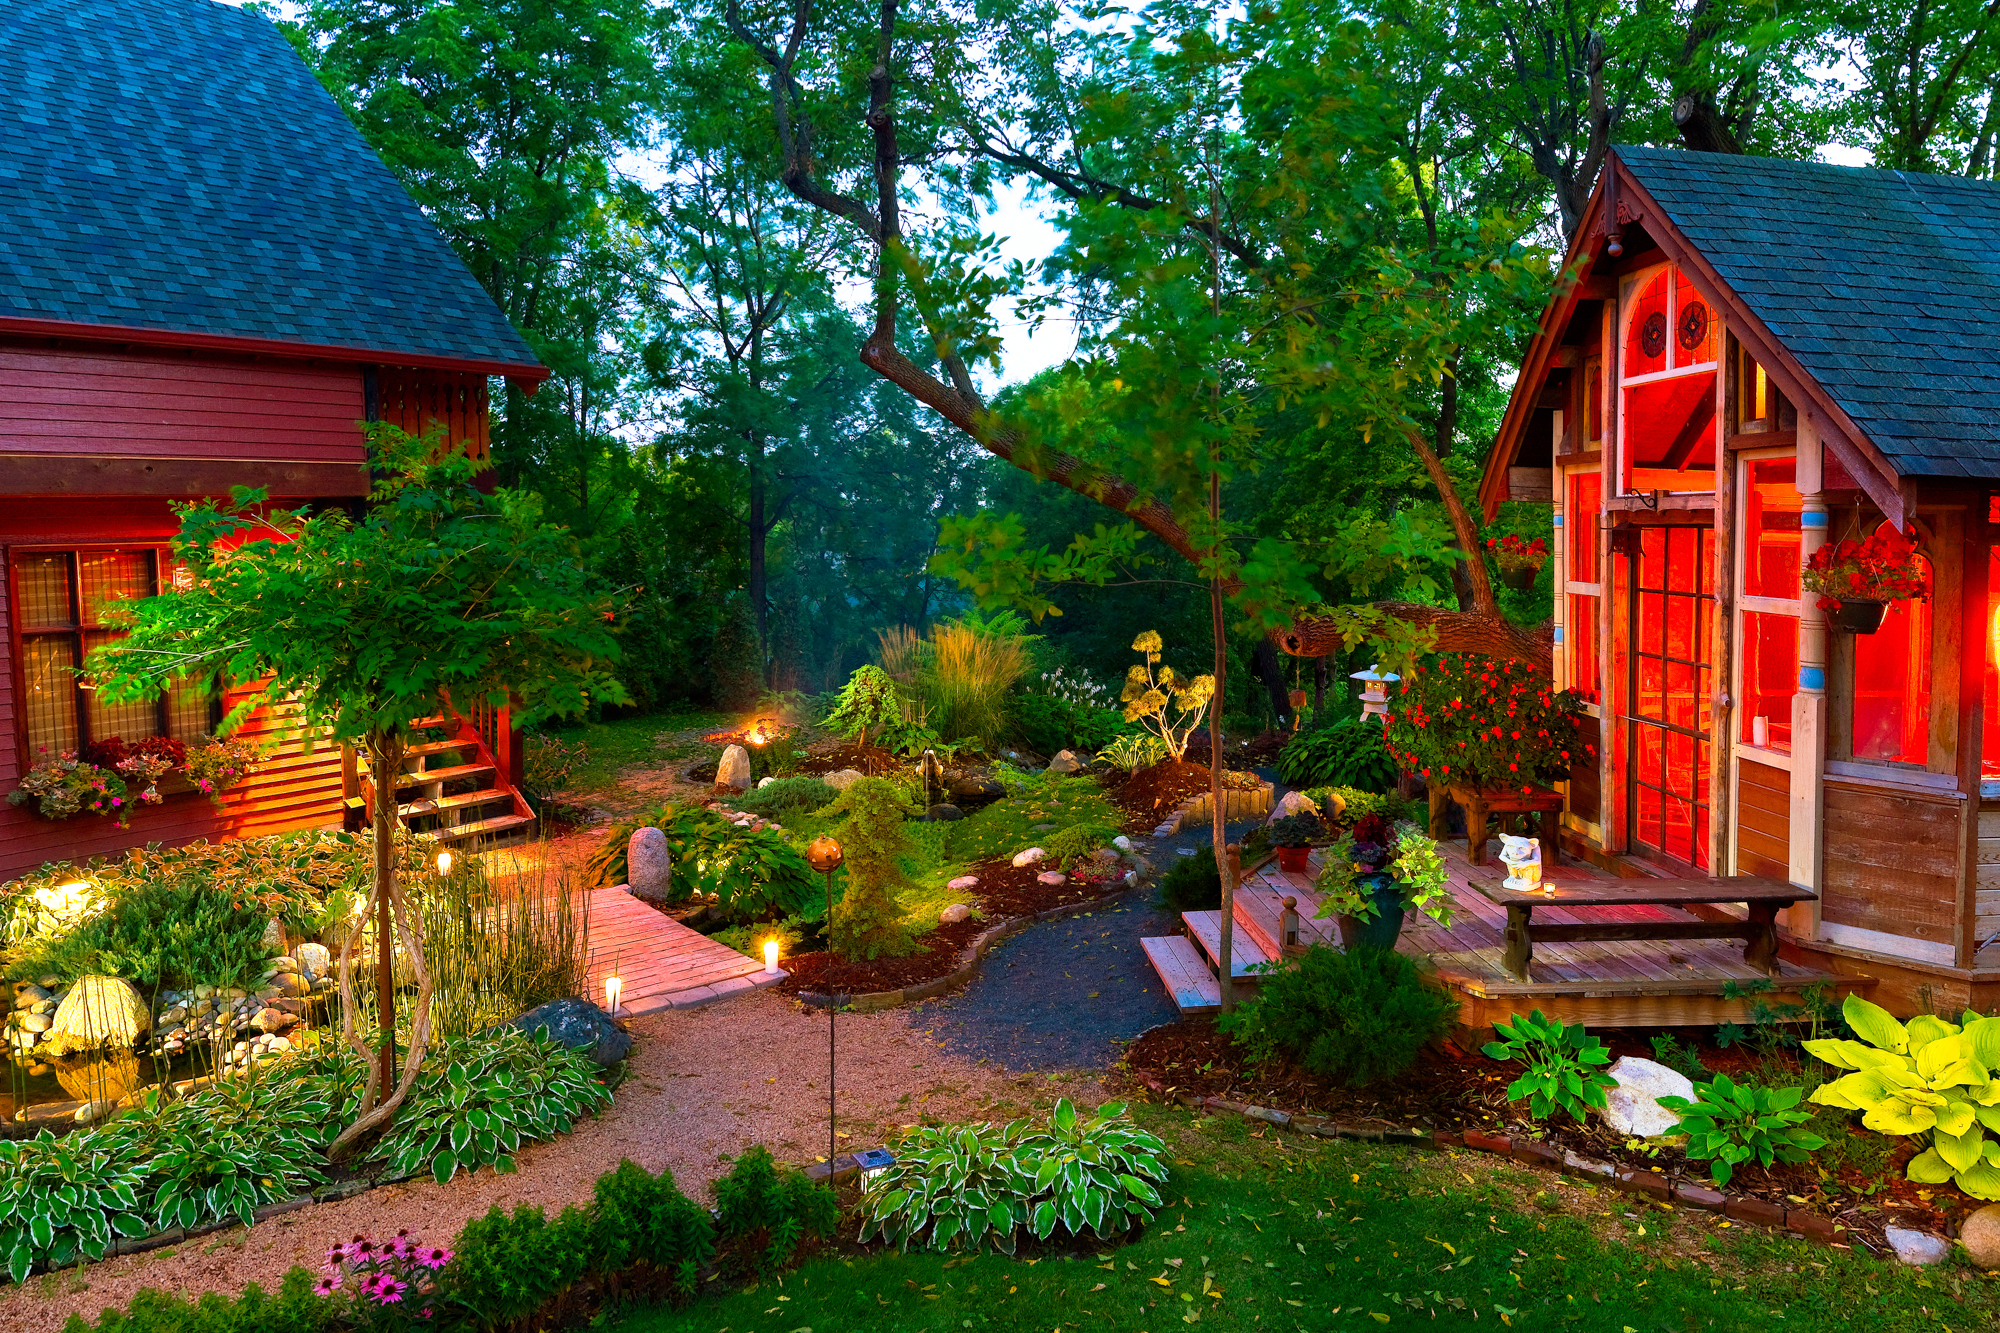 Будете на даче. Красивая дача. Дачный домик с садом. Уютный дачный участок. Маленький домик в саду.